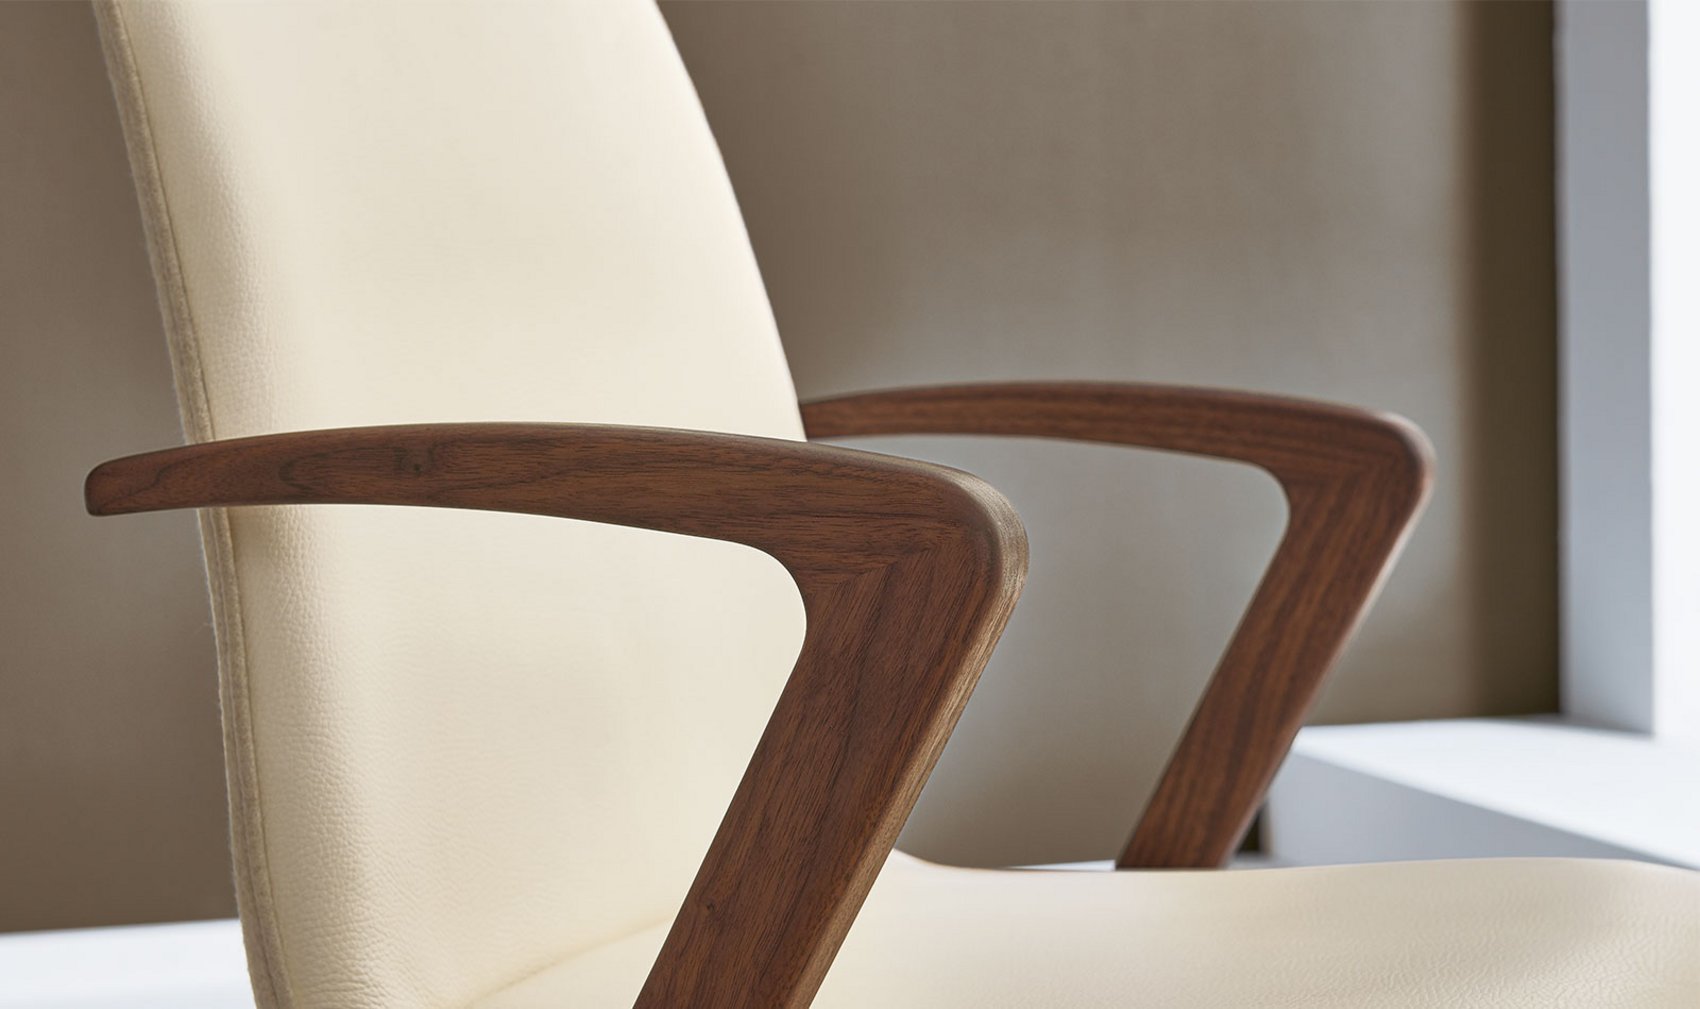 Esszimmer - Stühle durch Vorsprung - und Sessel / Venjakob Sessel Möbel - Qualität - Design Kate